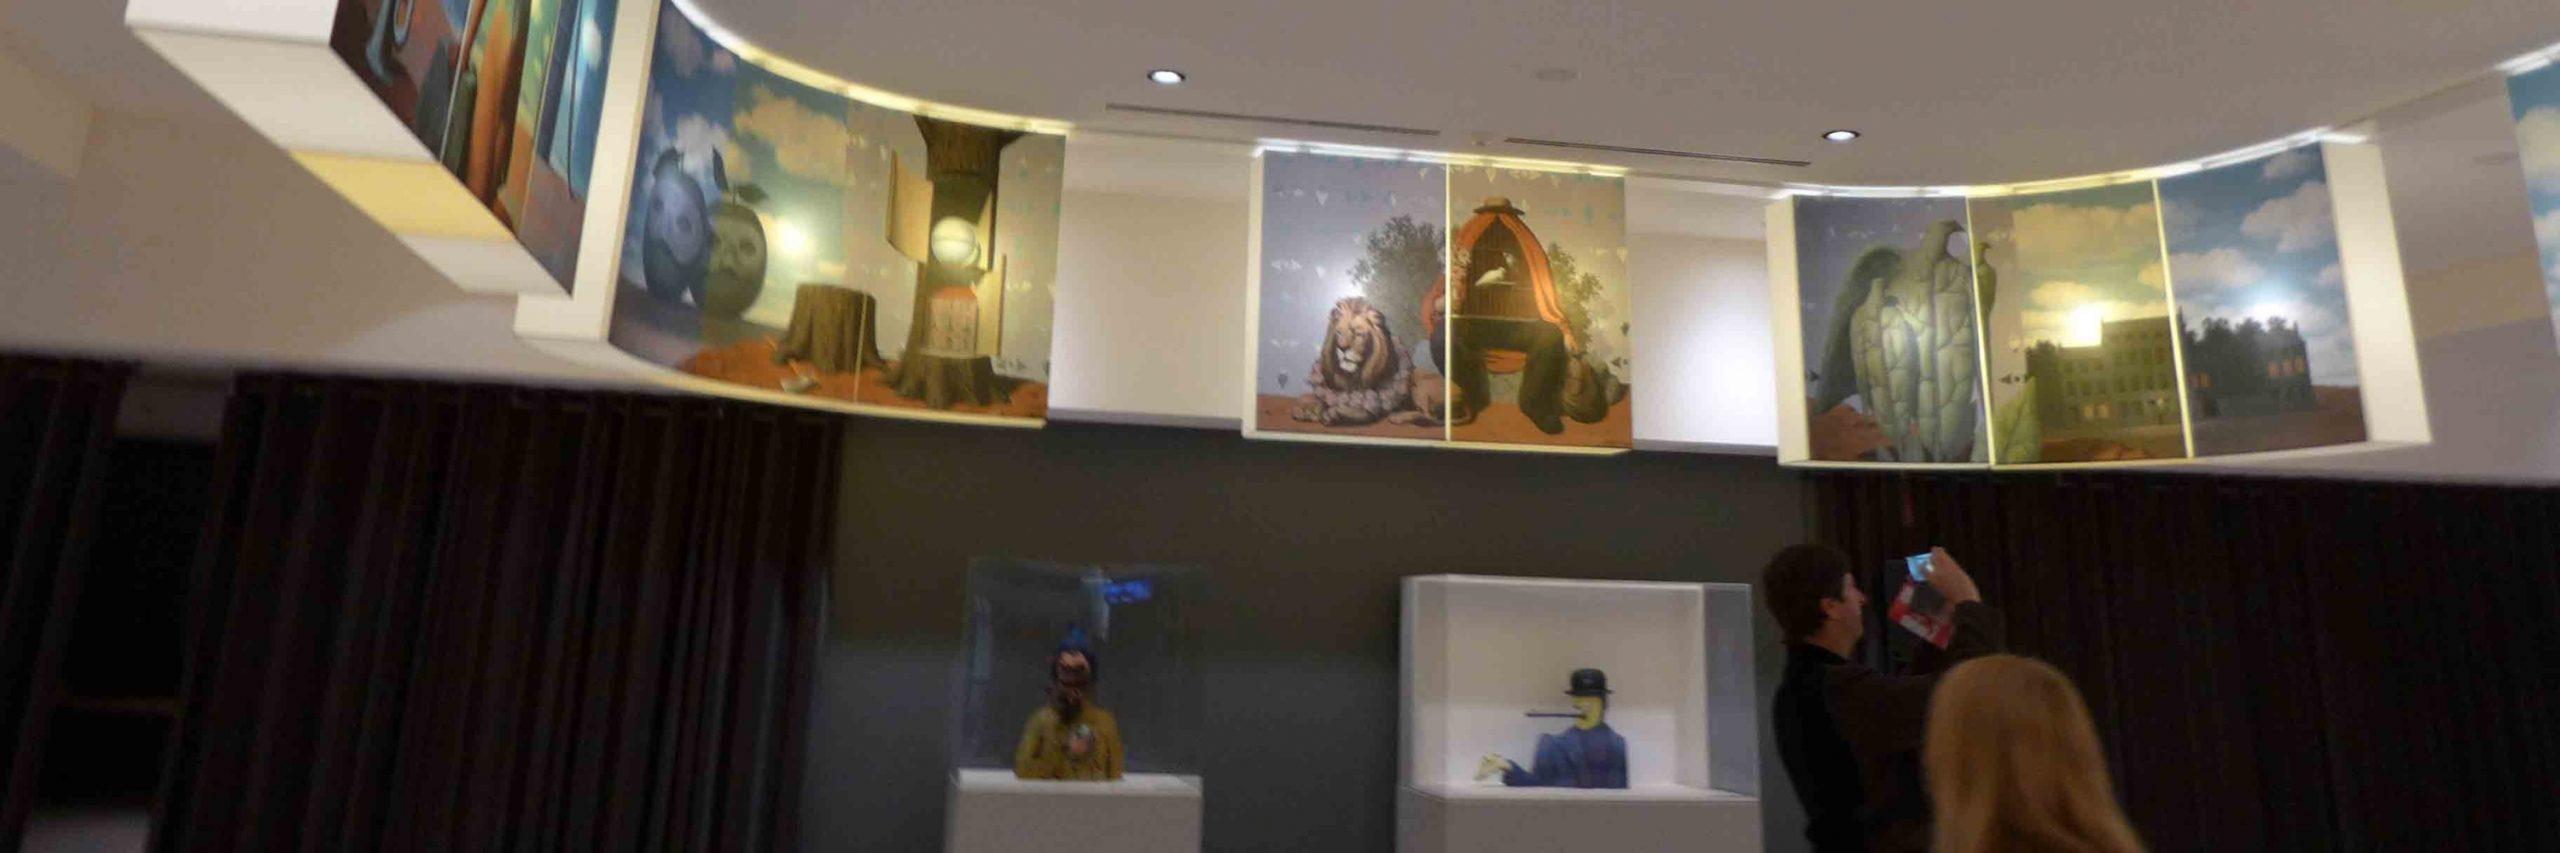 Bảo tàng René Magritte - nguồn: Internet